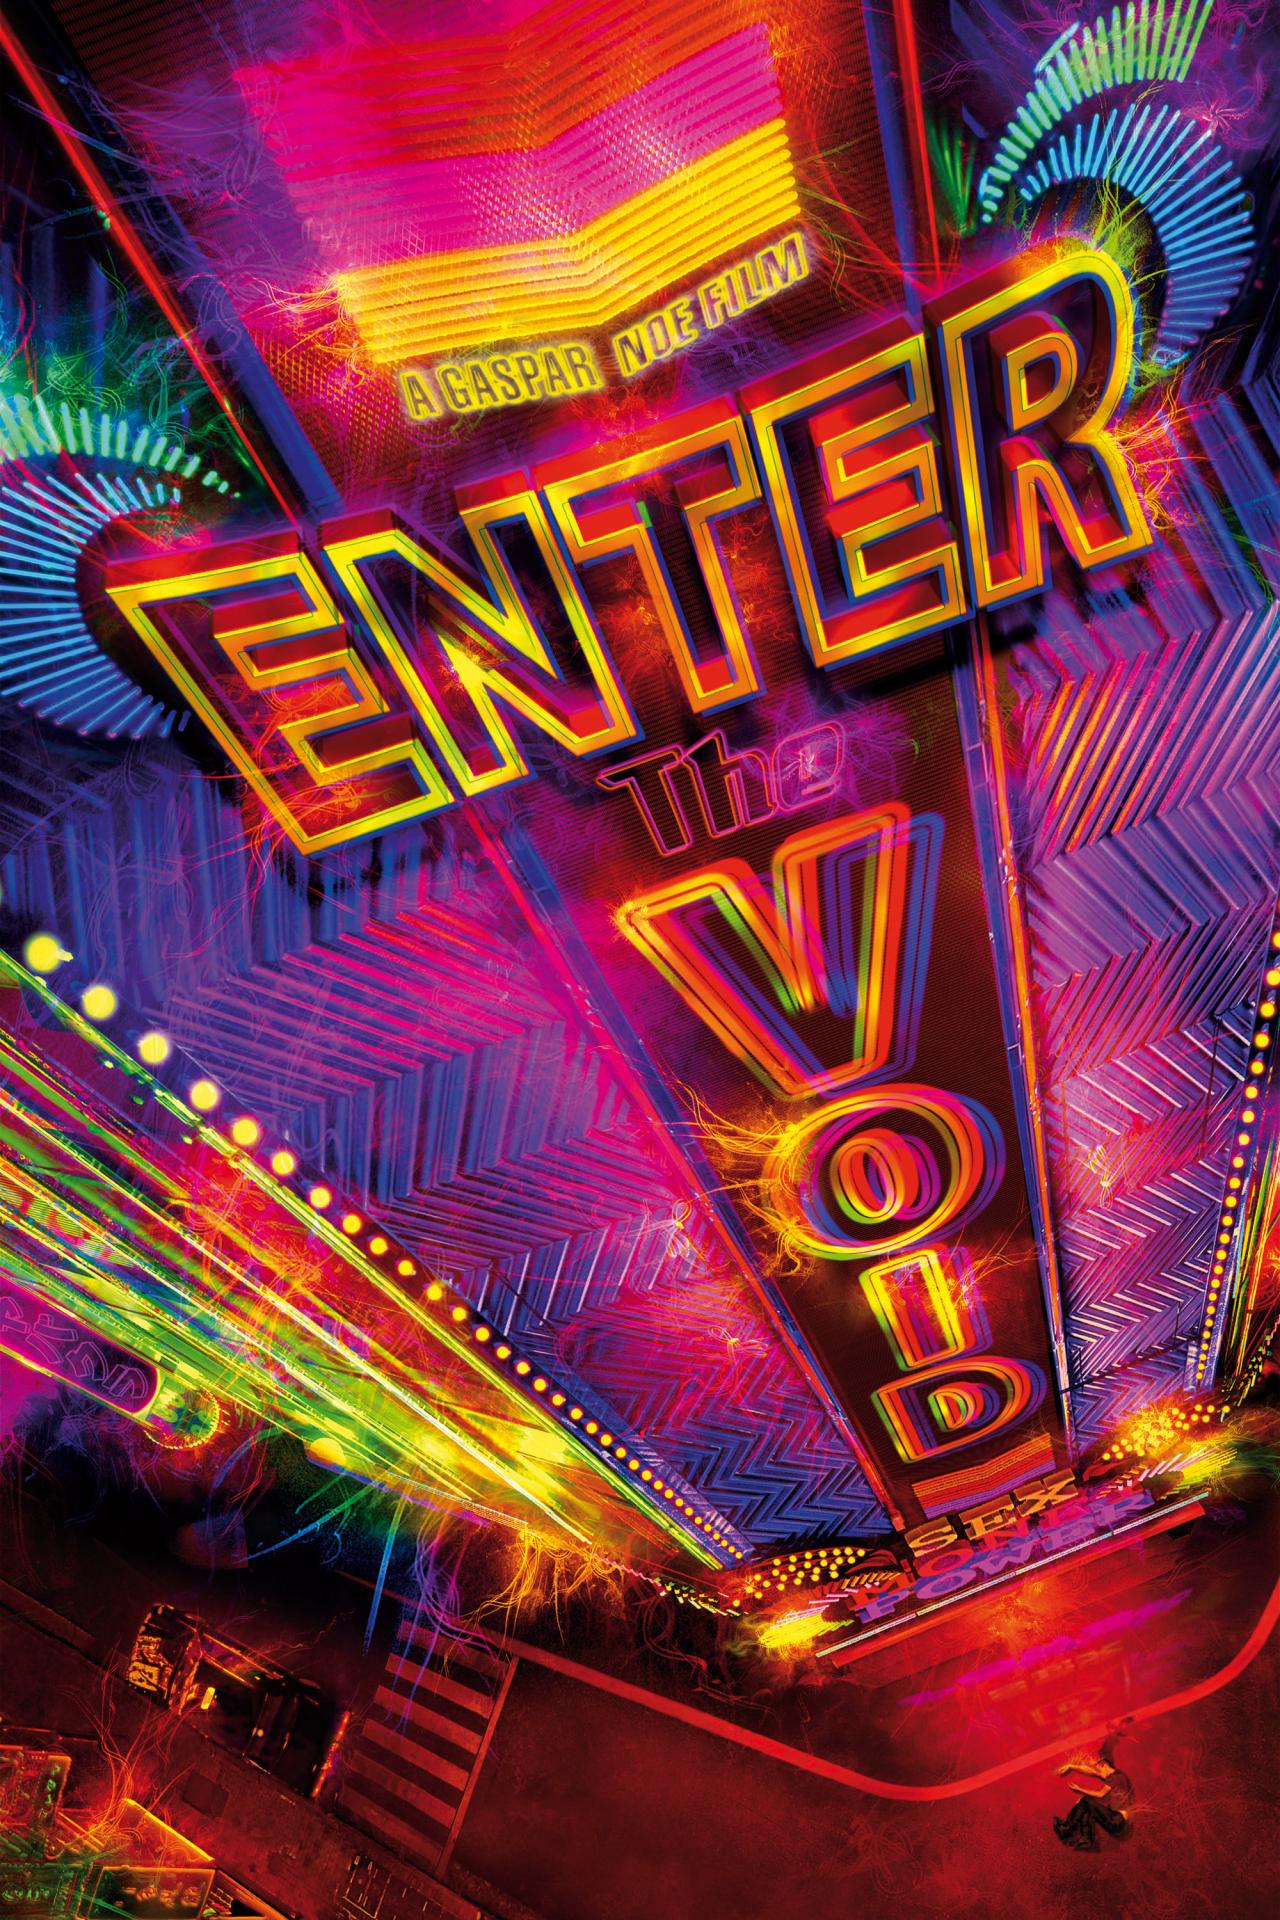 Enter the Void est-il disponible sur Netflix ou autre ?